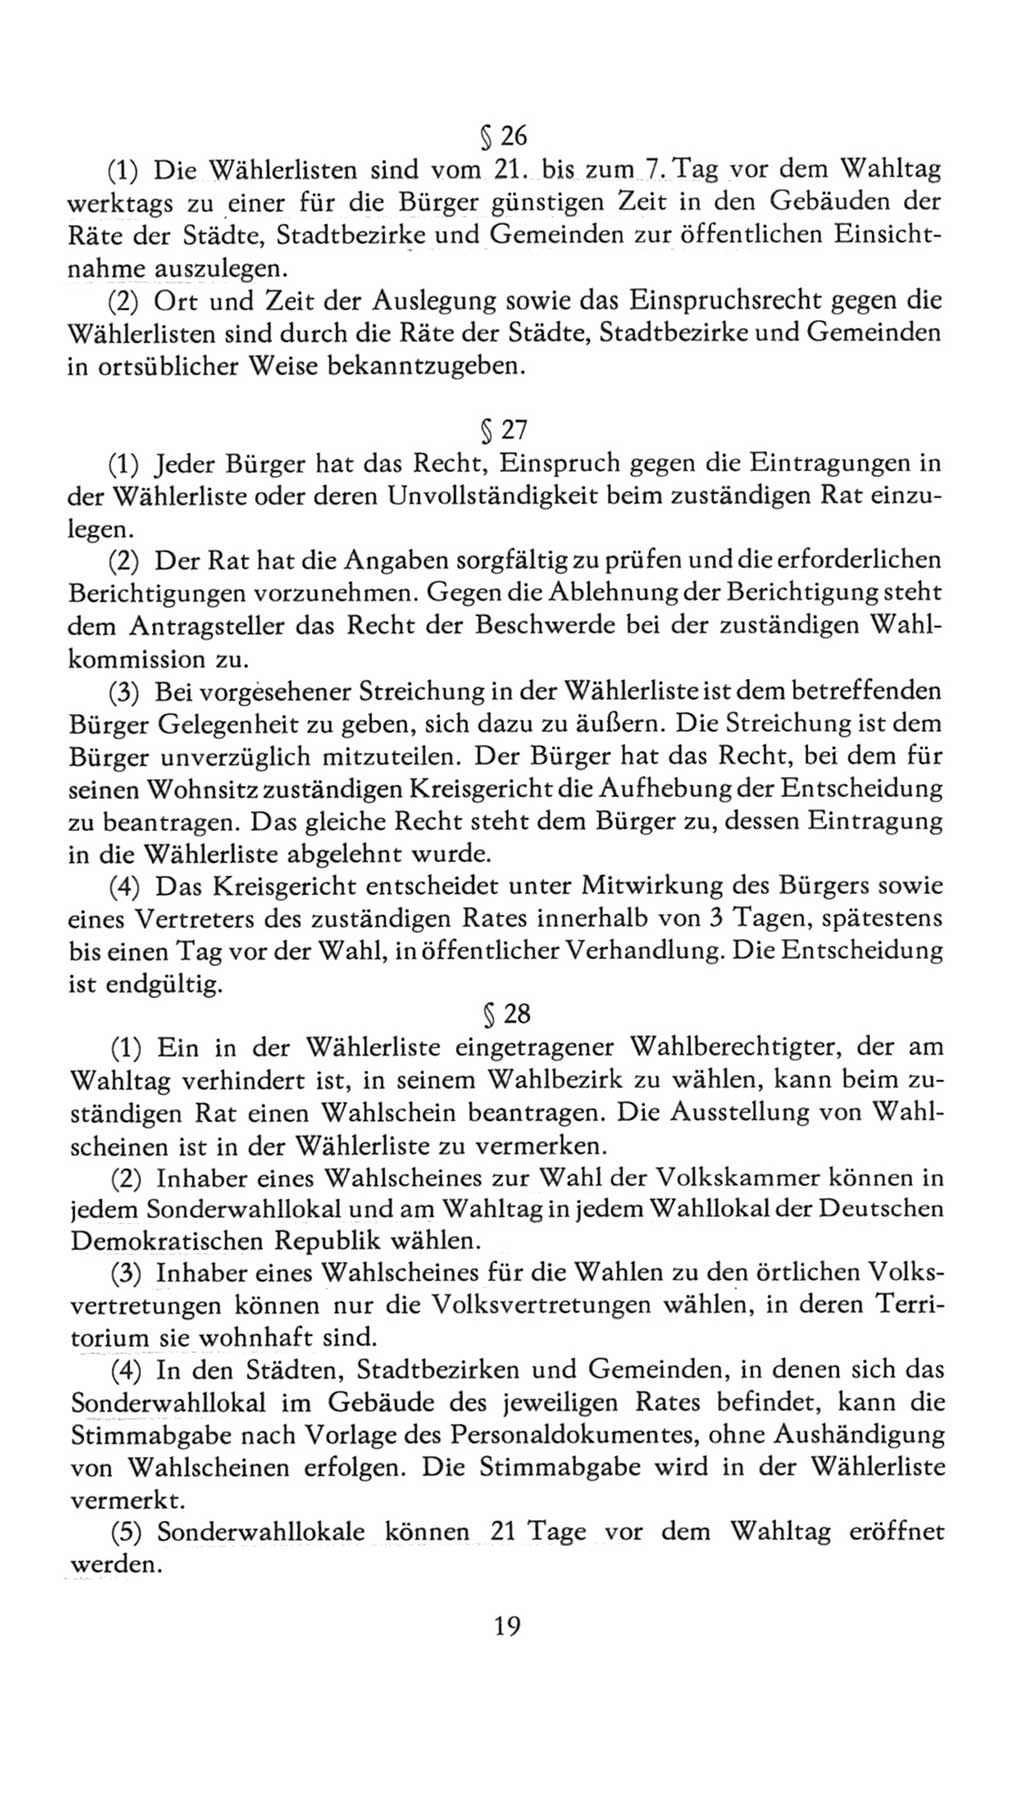 Volkskammer (VK) der Deutschen Demokratischen Republik (DDR), 7. Wahlperiode 1976-1981, Seite 19 (VK. DDR 7. WP. 1976-1981, S. 19)